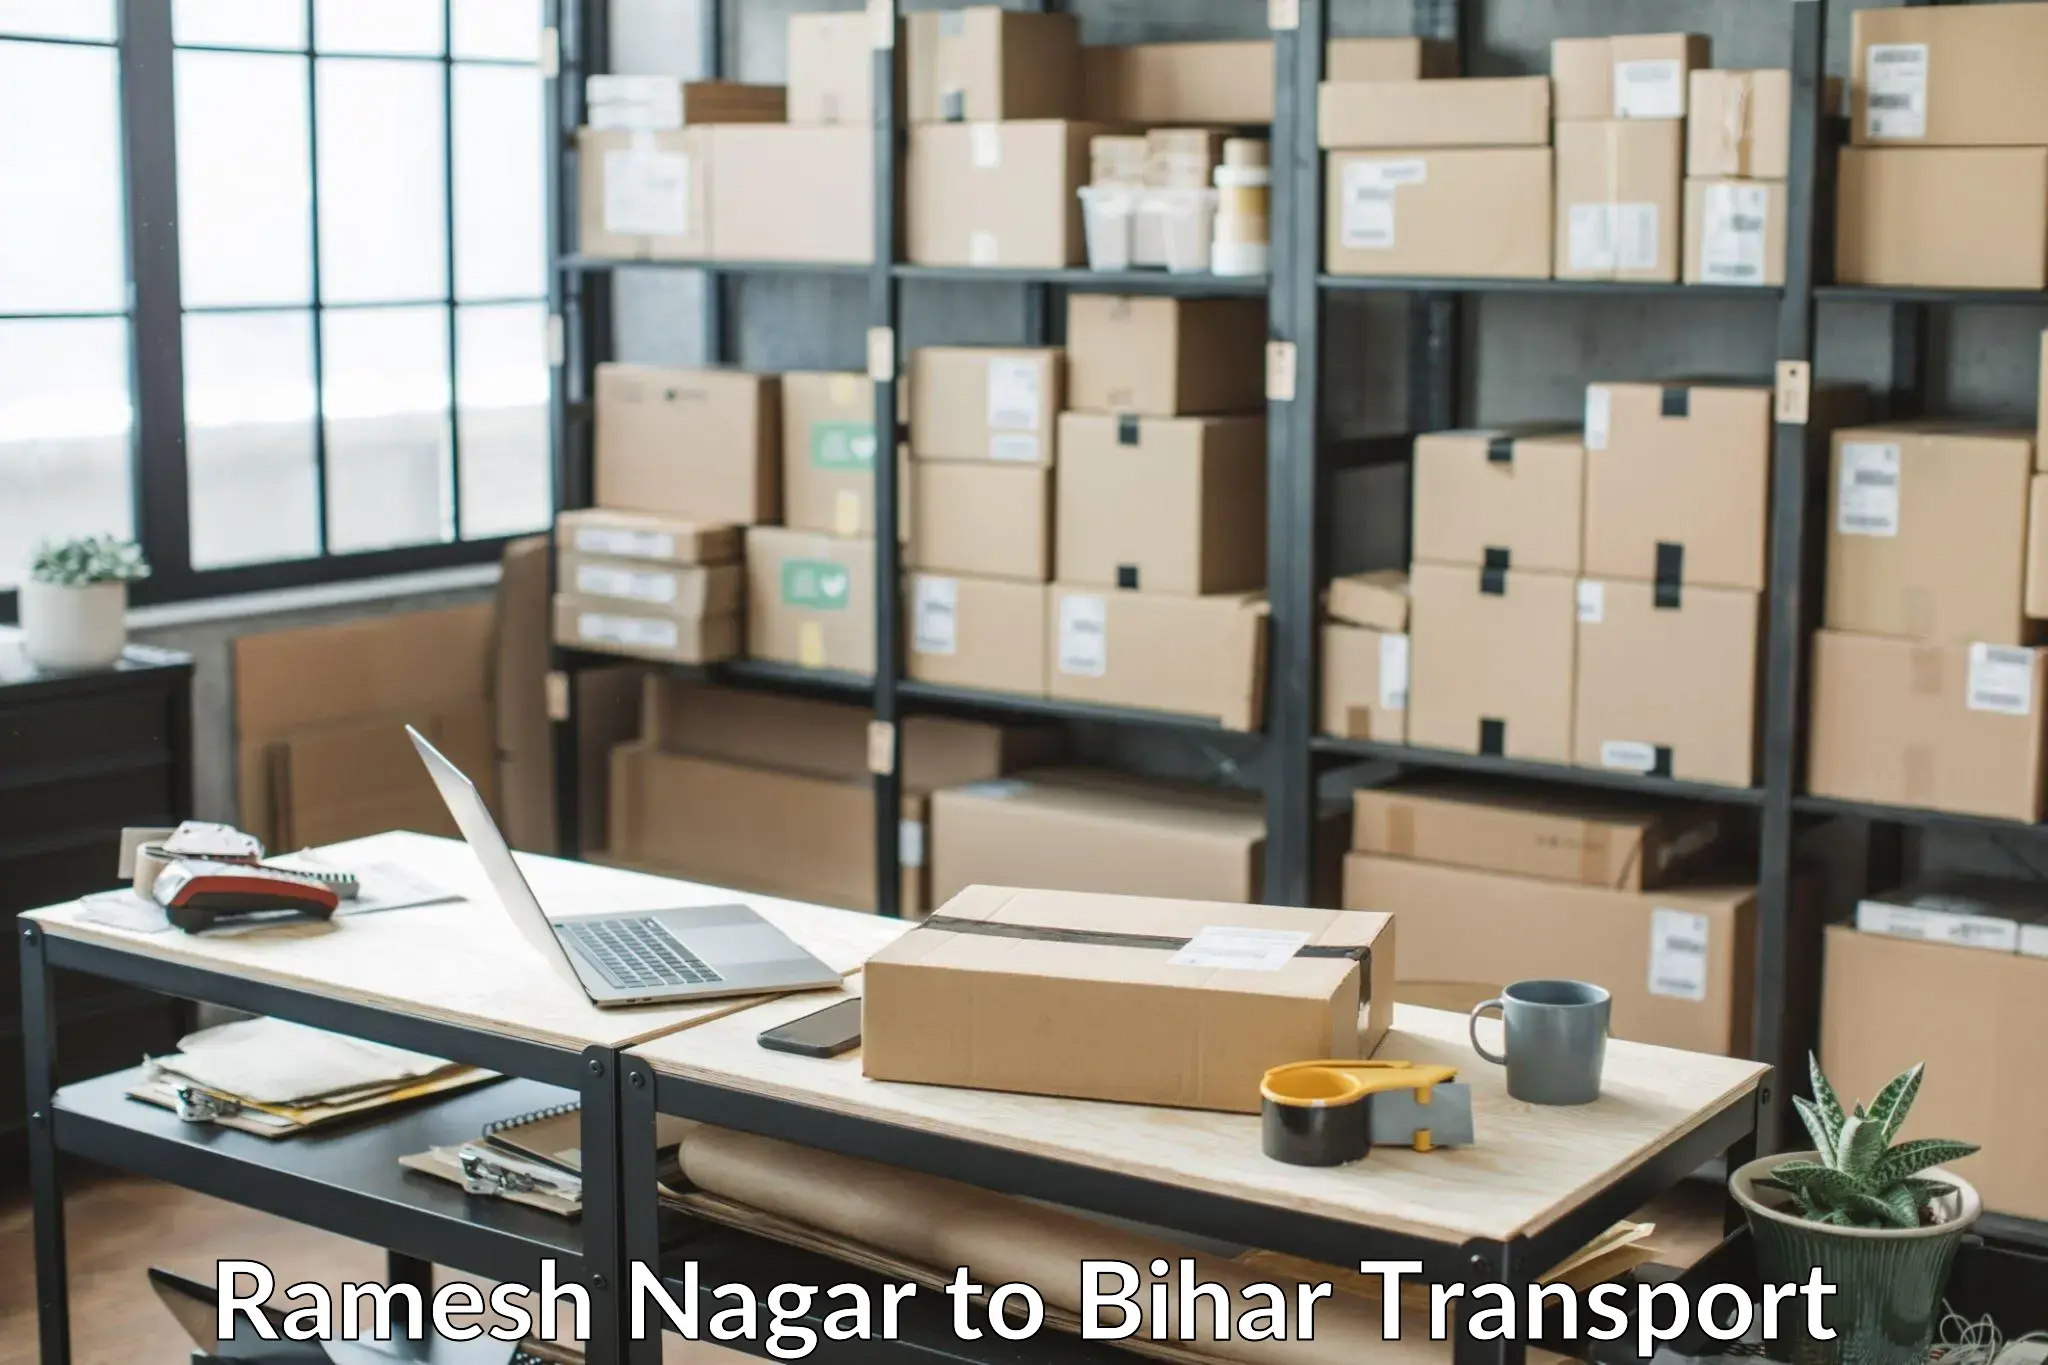 Furniture transport service Ramesh Nagar to Dhaka